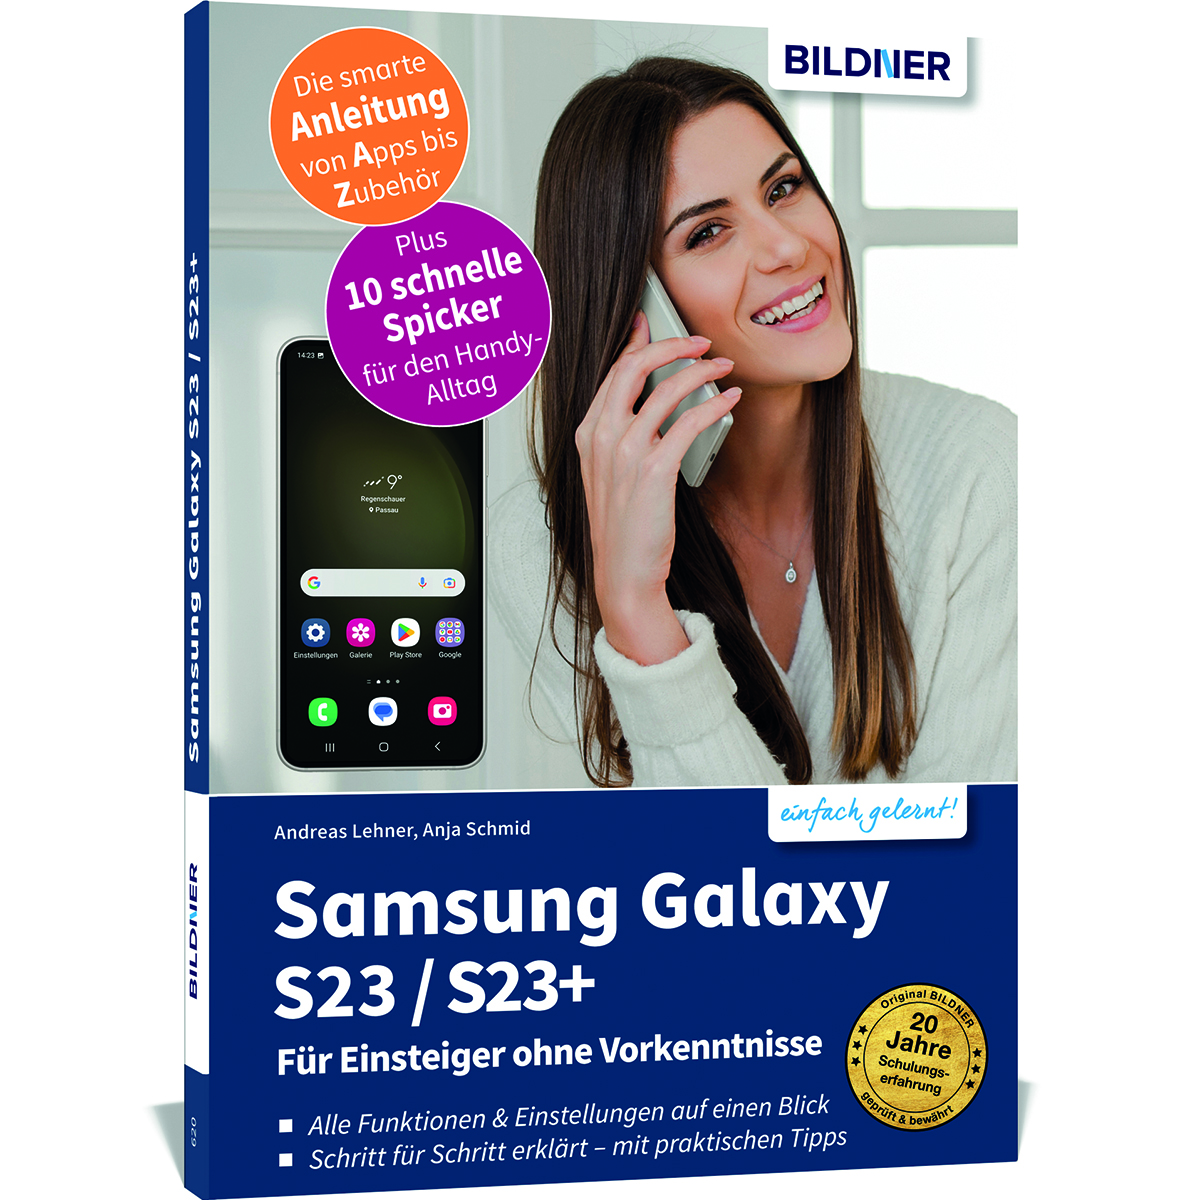 Einsteiger Für – Galaxy Samsung ohne Vorkenntnisse S23/S23+